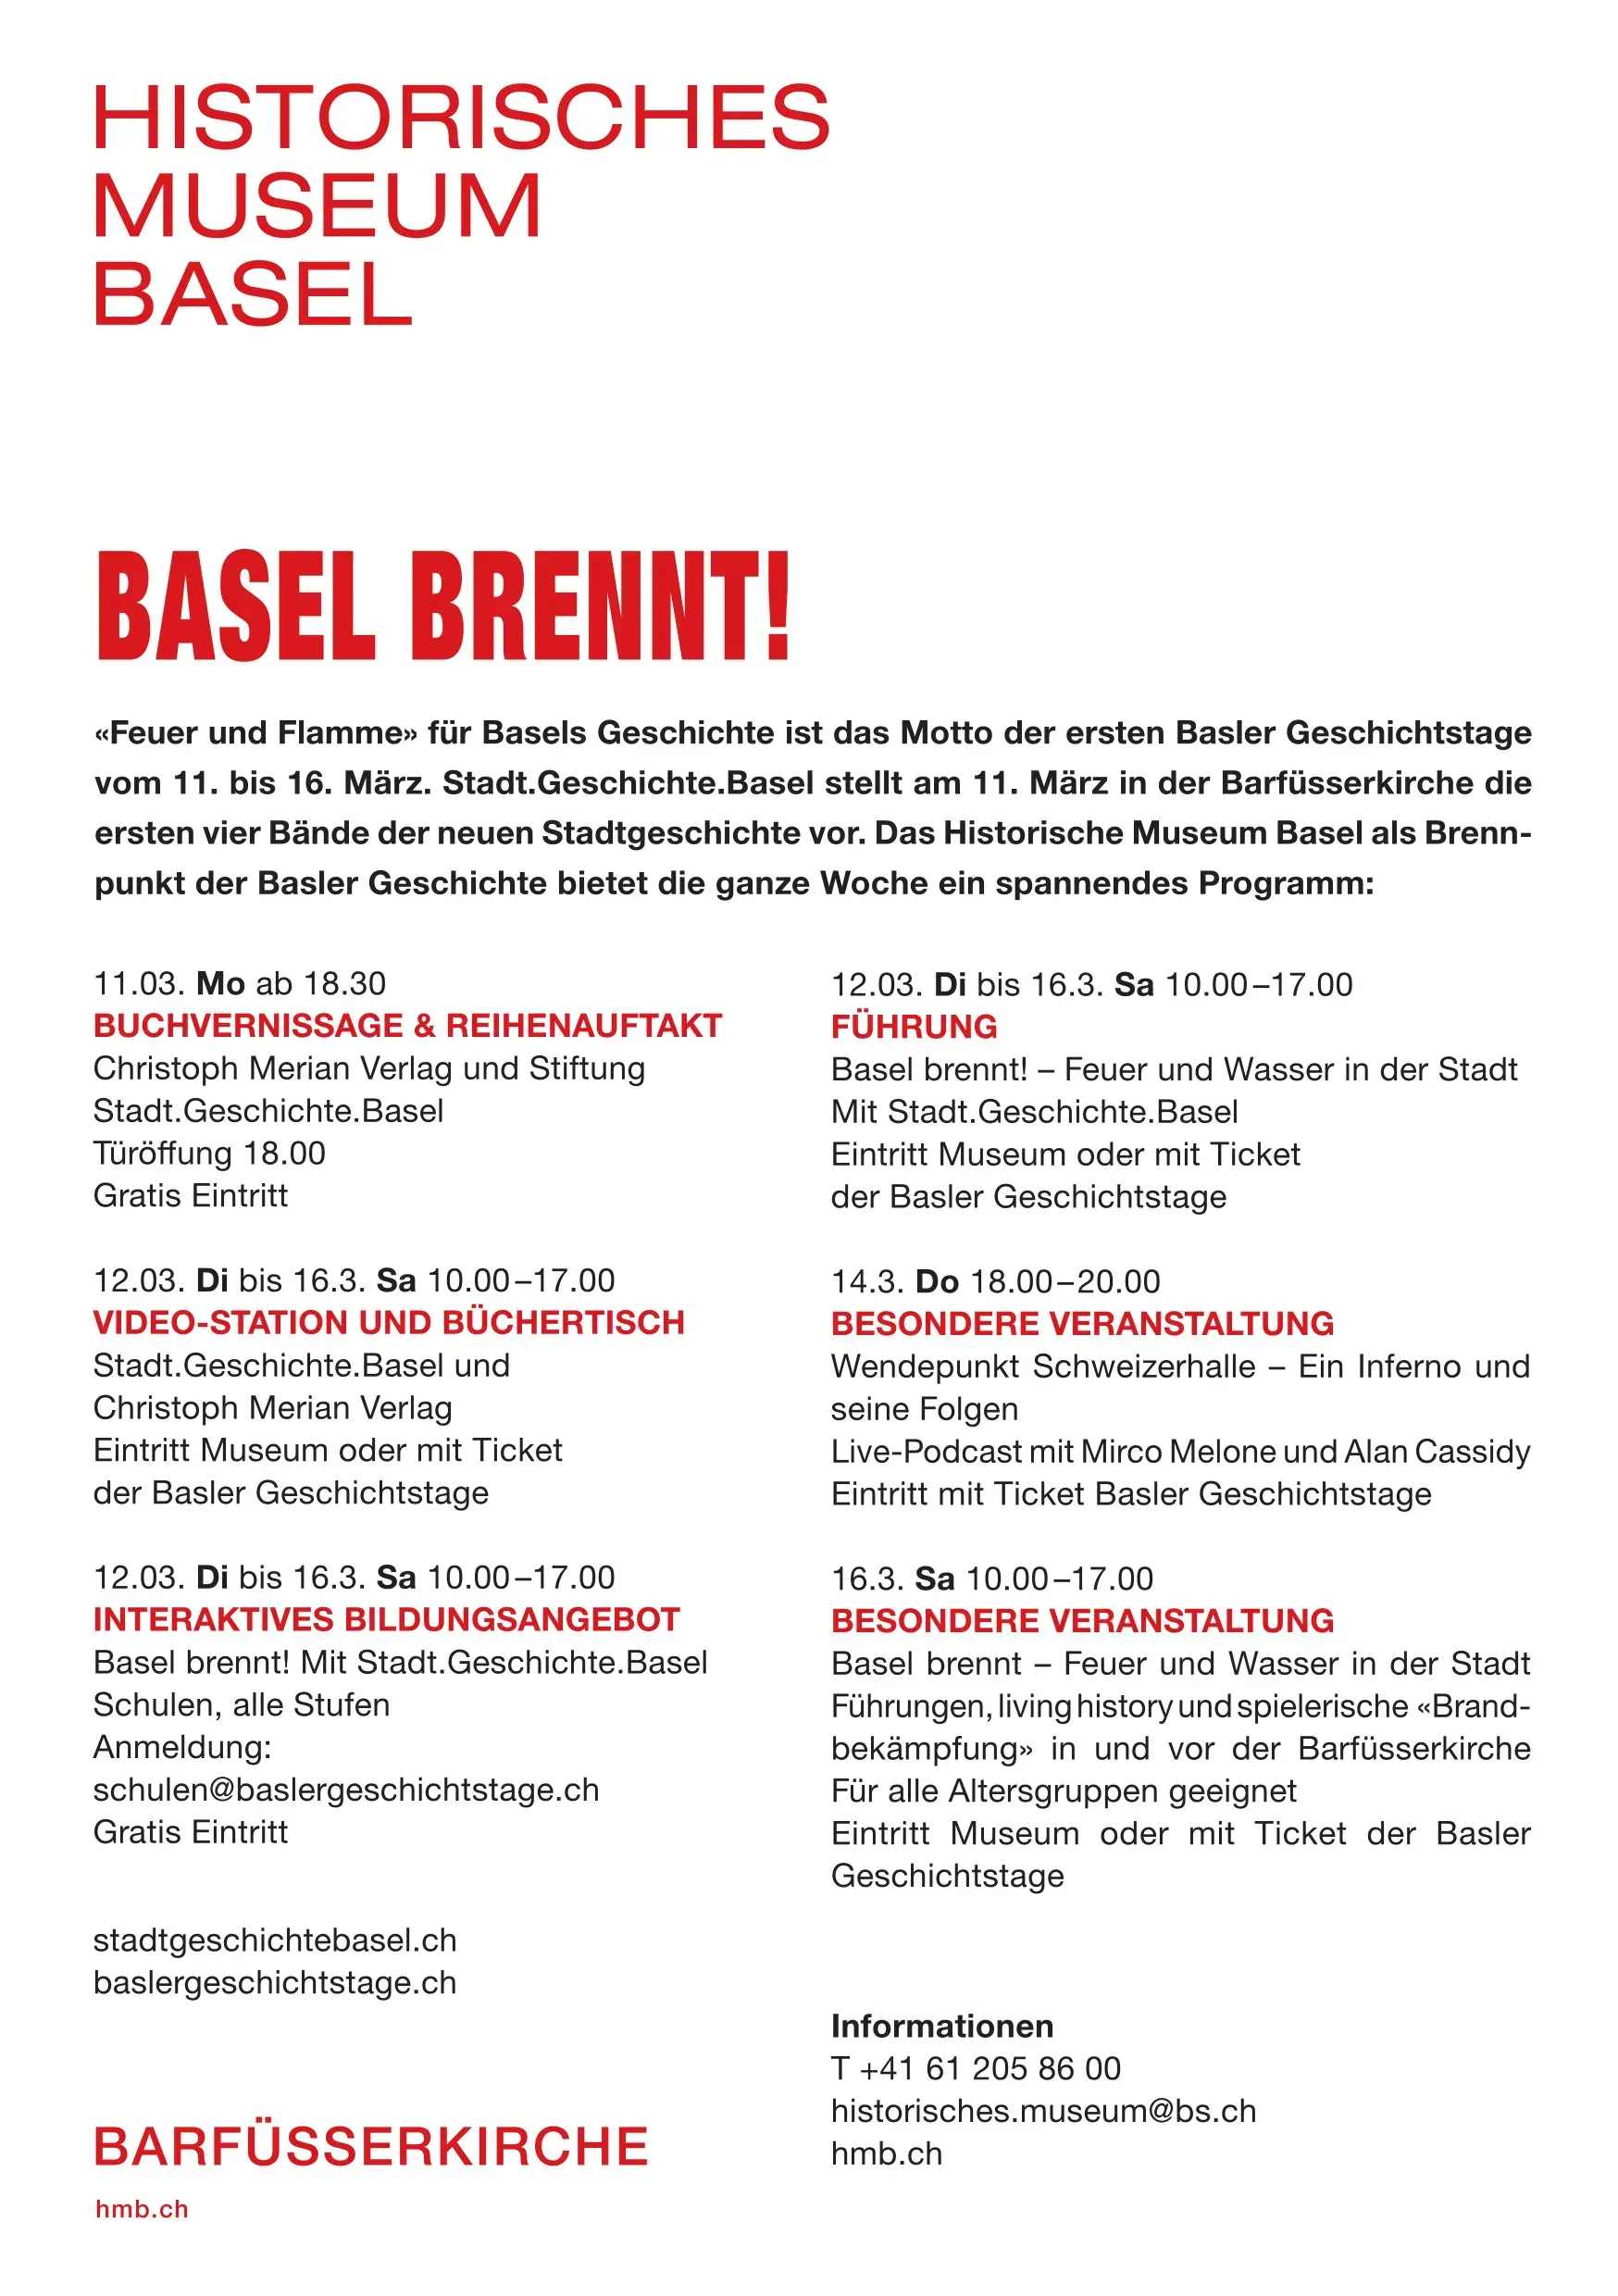 Das Programm der Basler Geschichtstage auf einem Flyer.